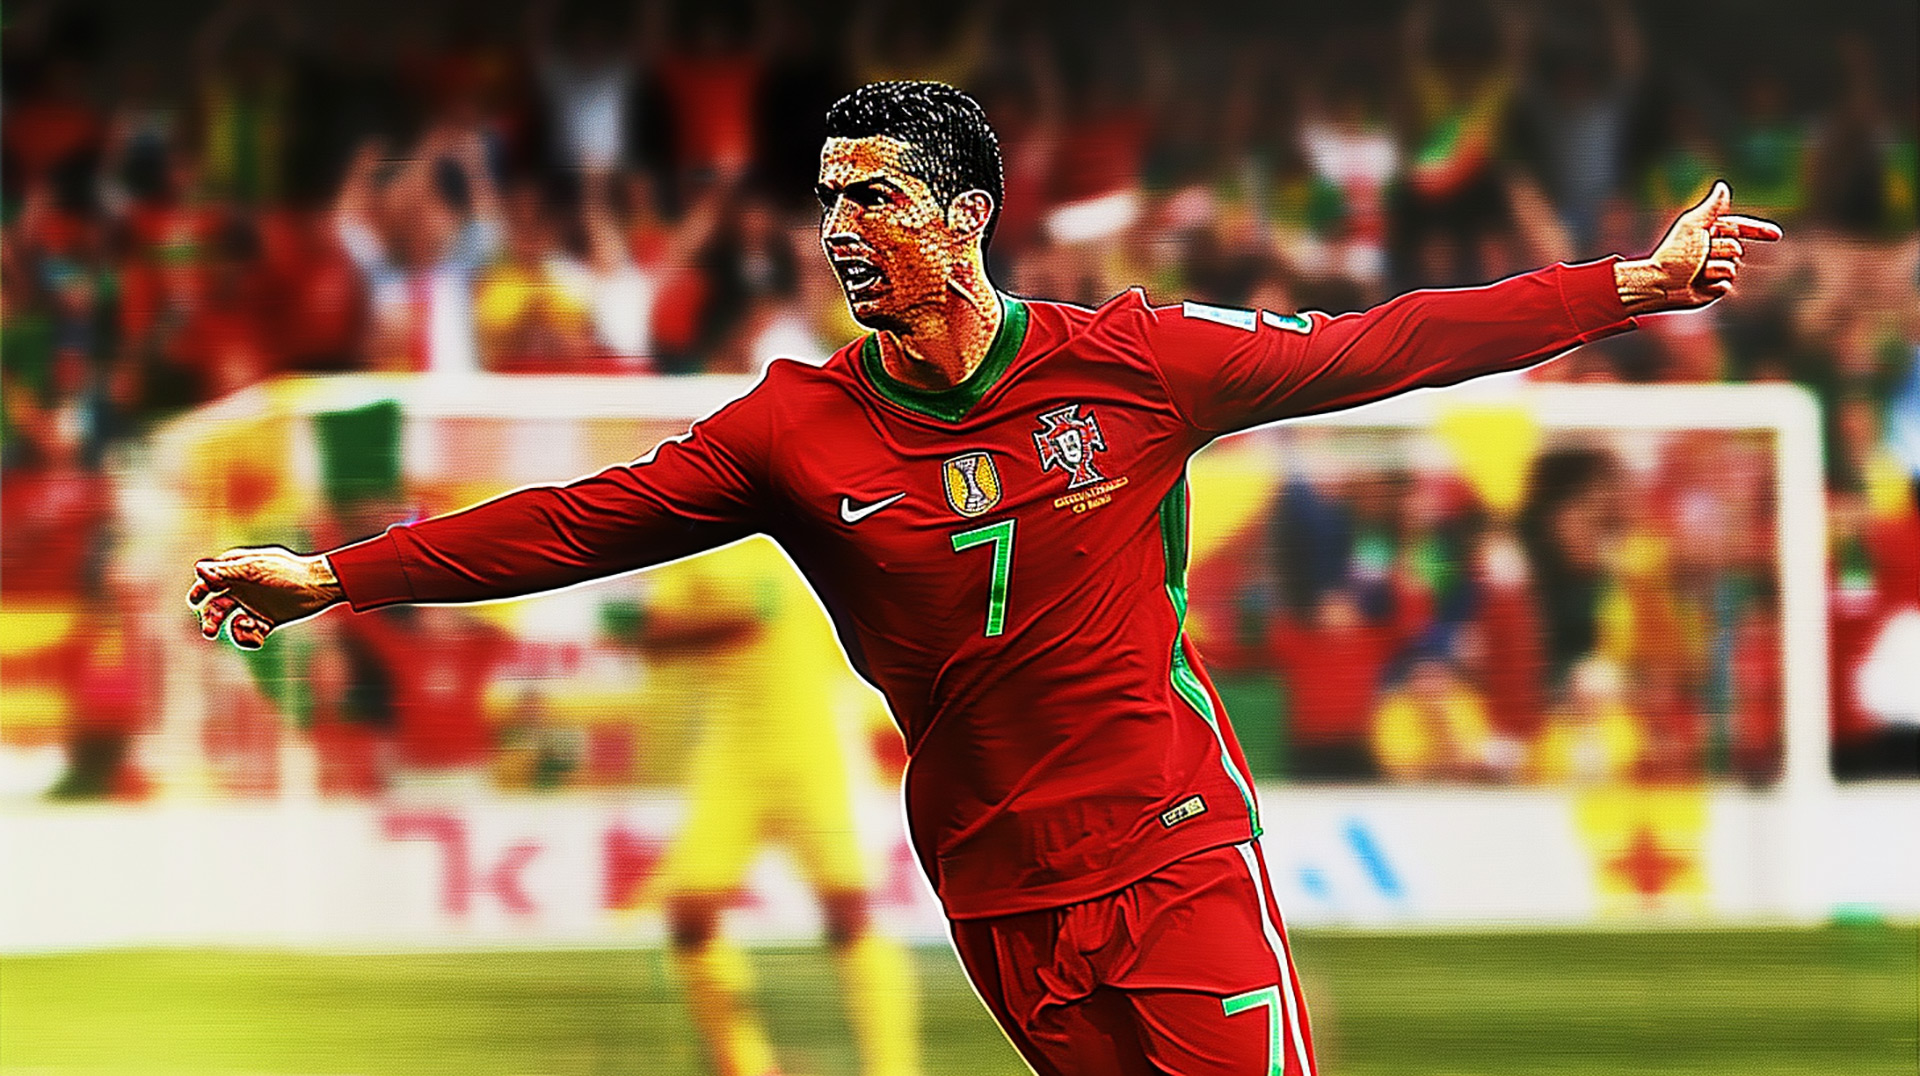 Cristiano Ronaldo Stock Photos: HD Download